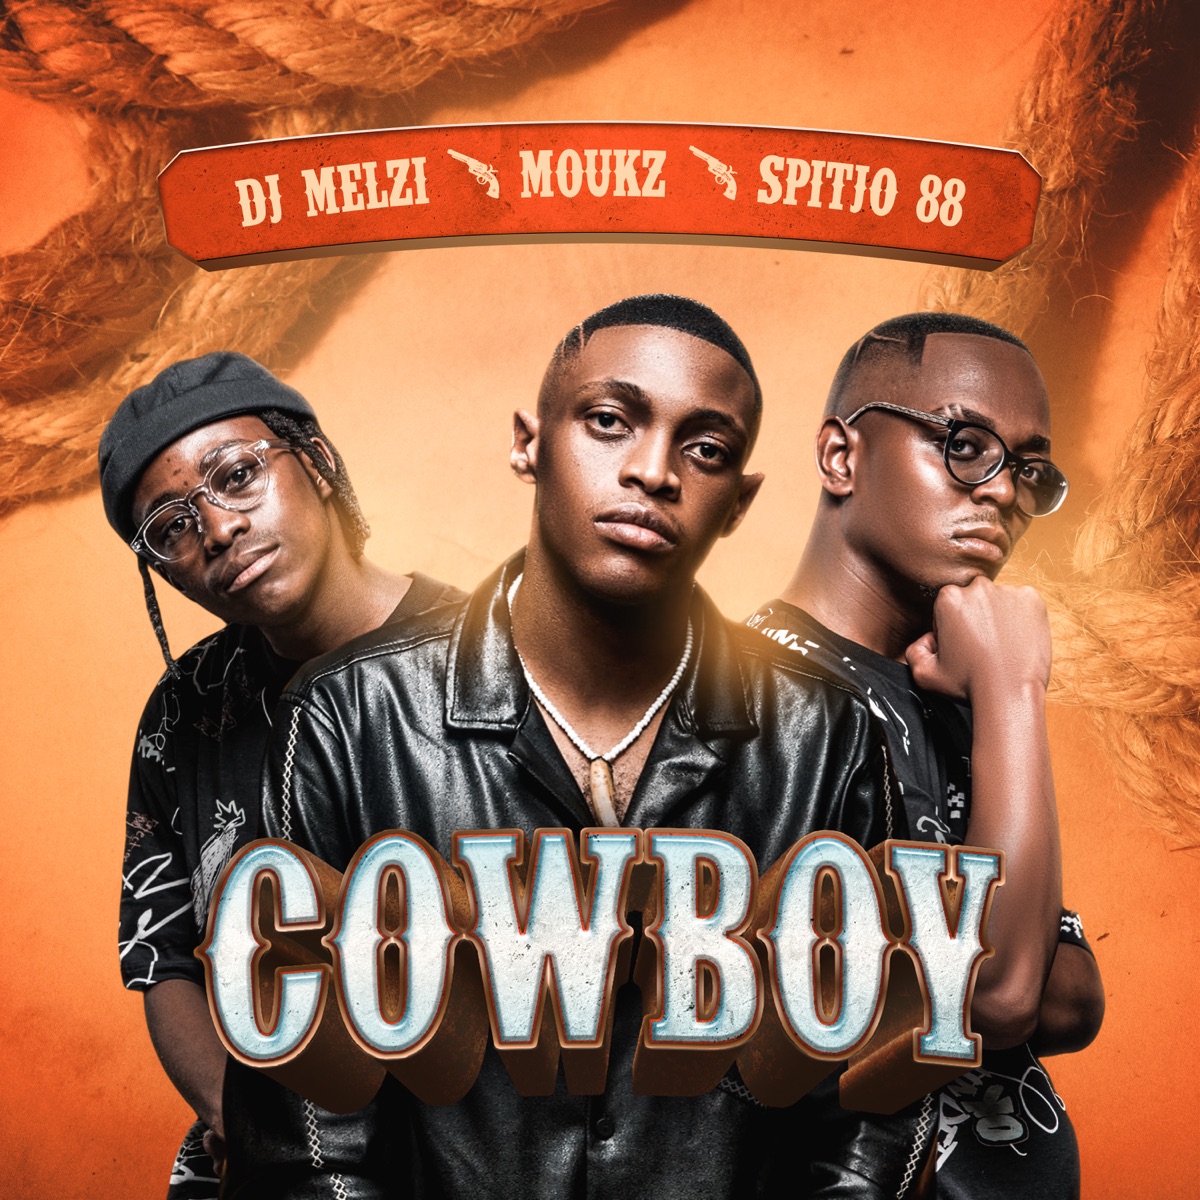 DJ Melzi, Moukz & Spitjo88 – Cowboy XIII